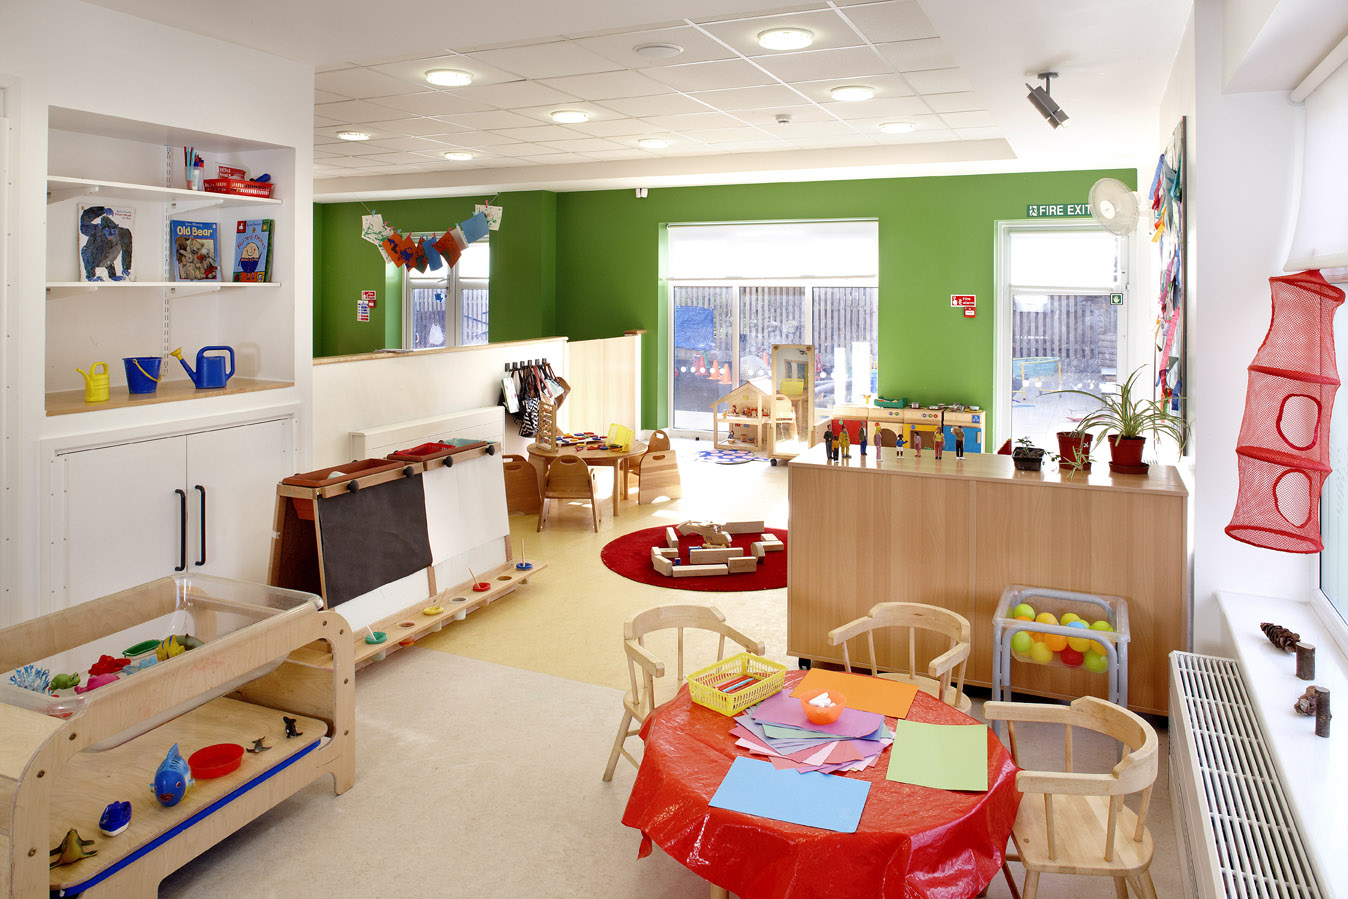 Waterways nursery and preschool room